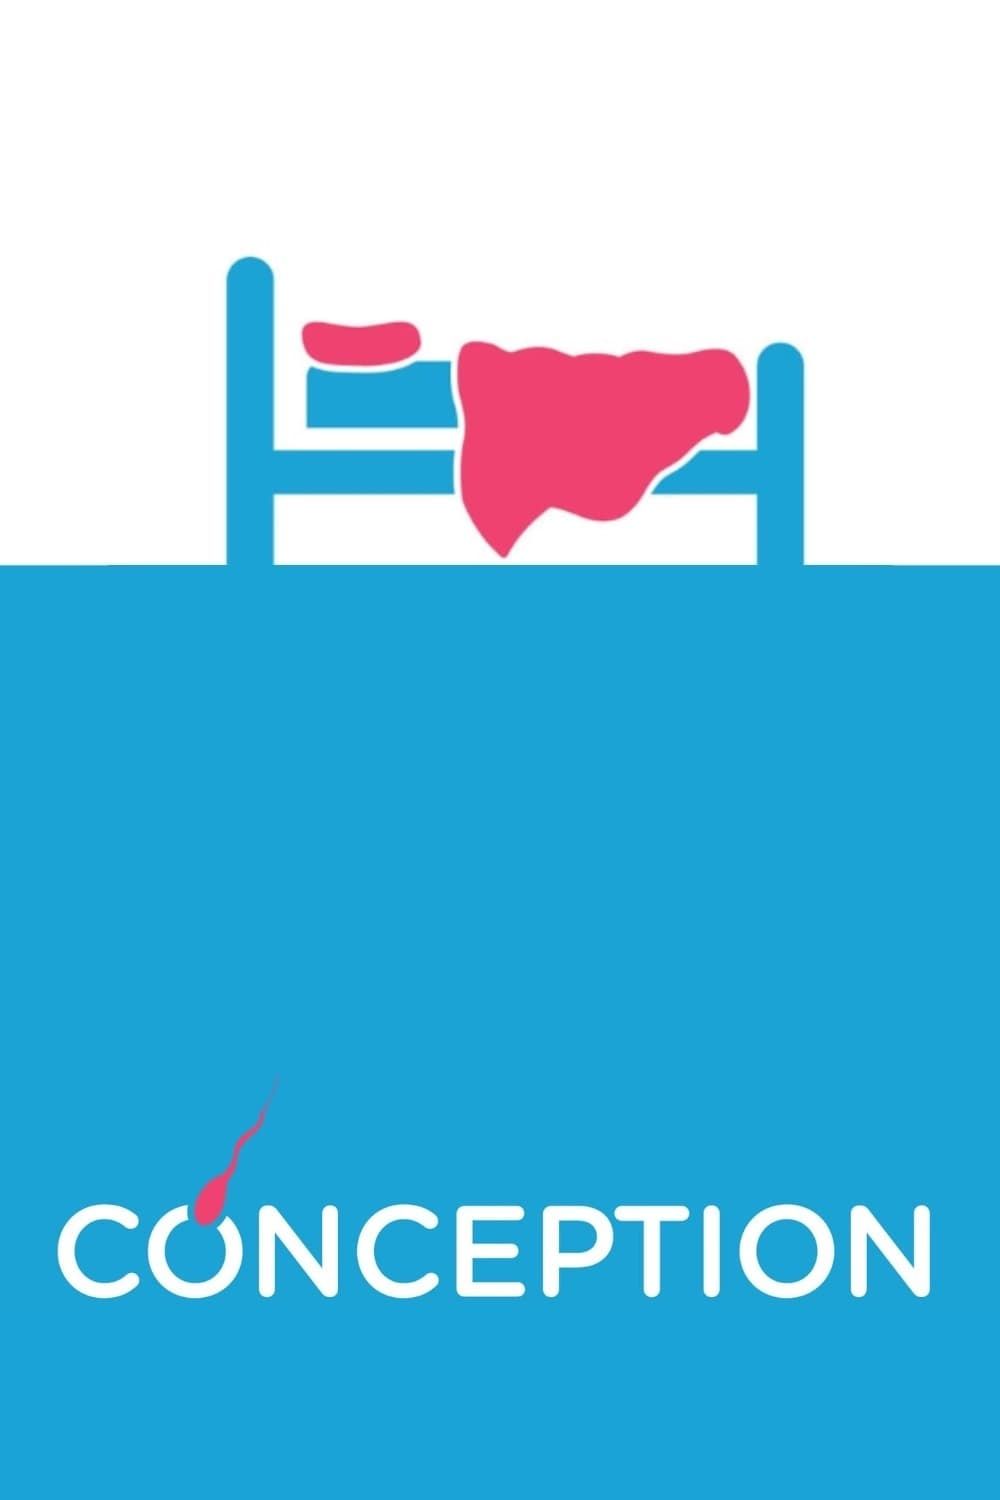 Watch Conception (2011) Full Movie Free Online - Plex